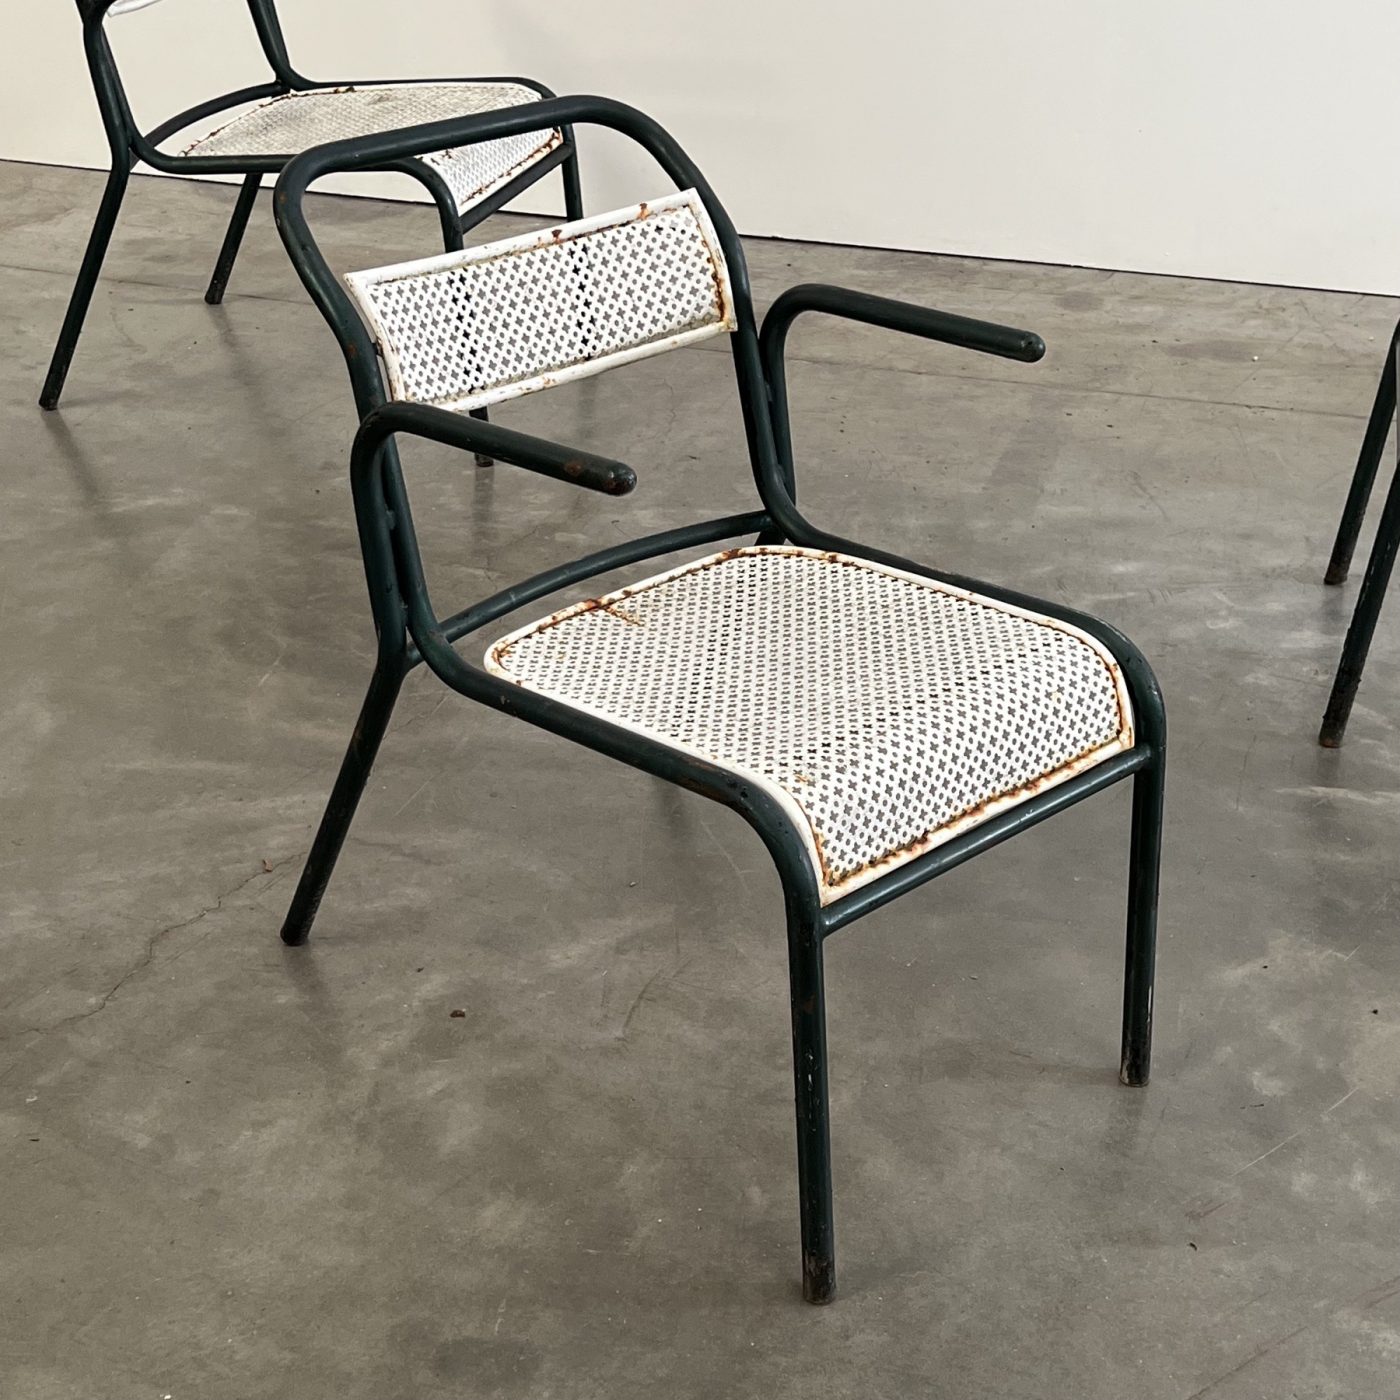 objet-vagabond-garden-chairs0000